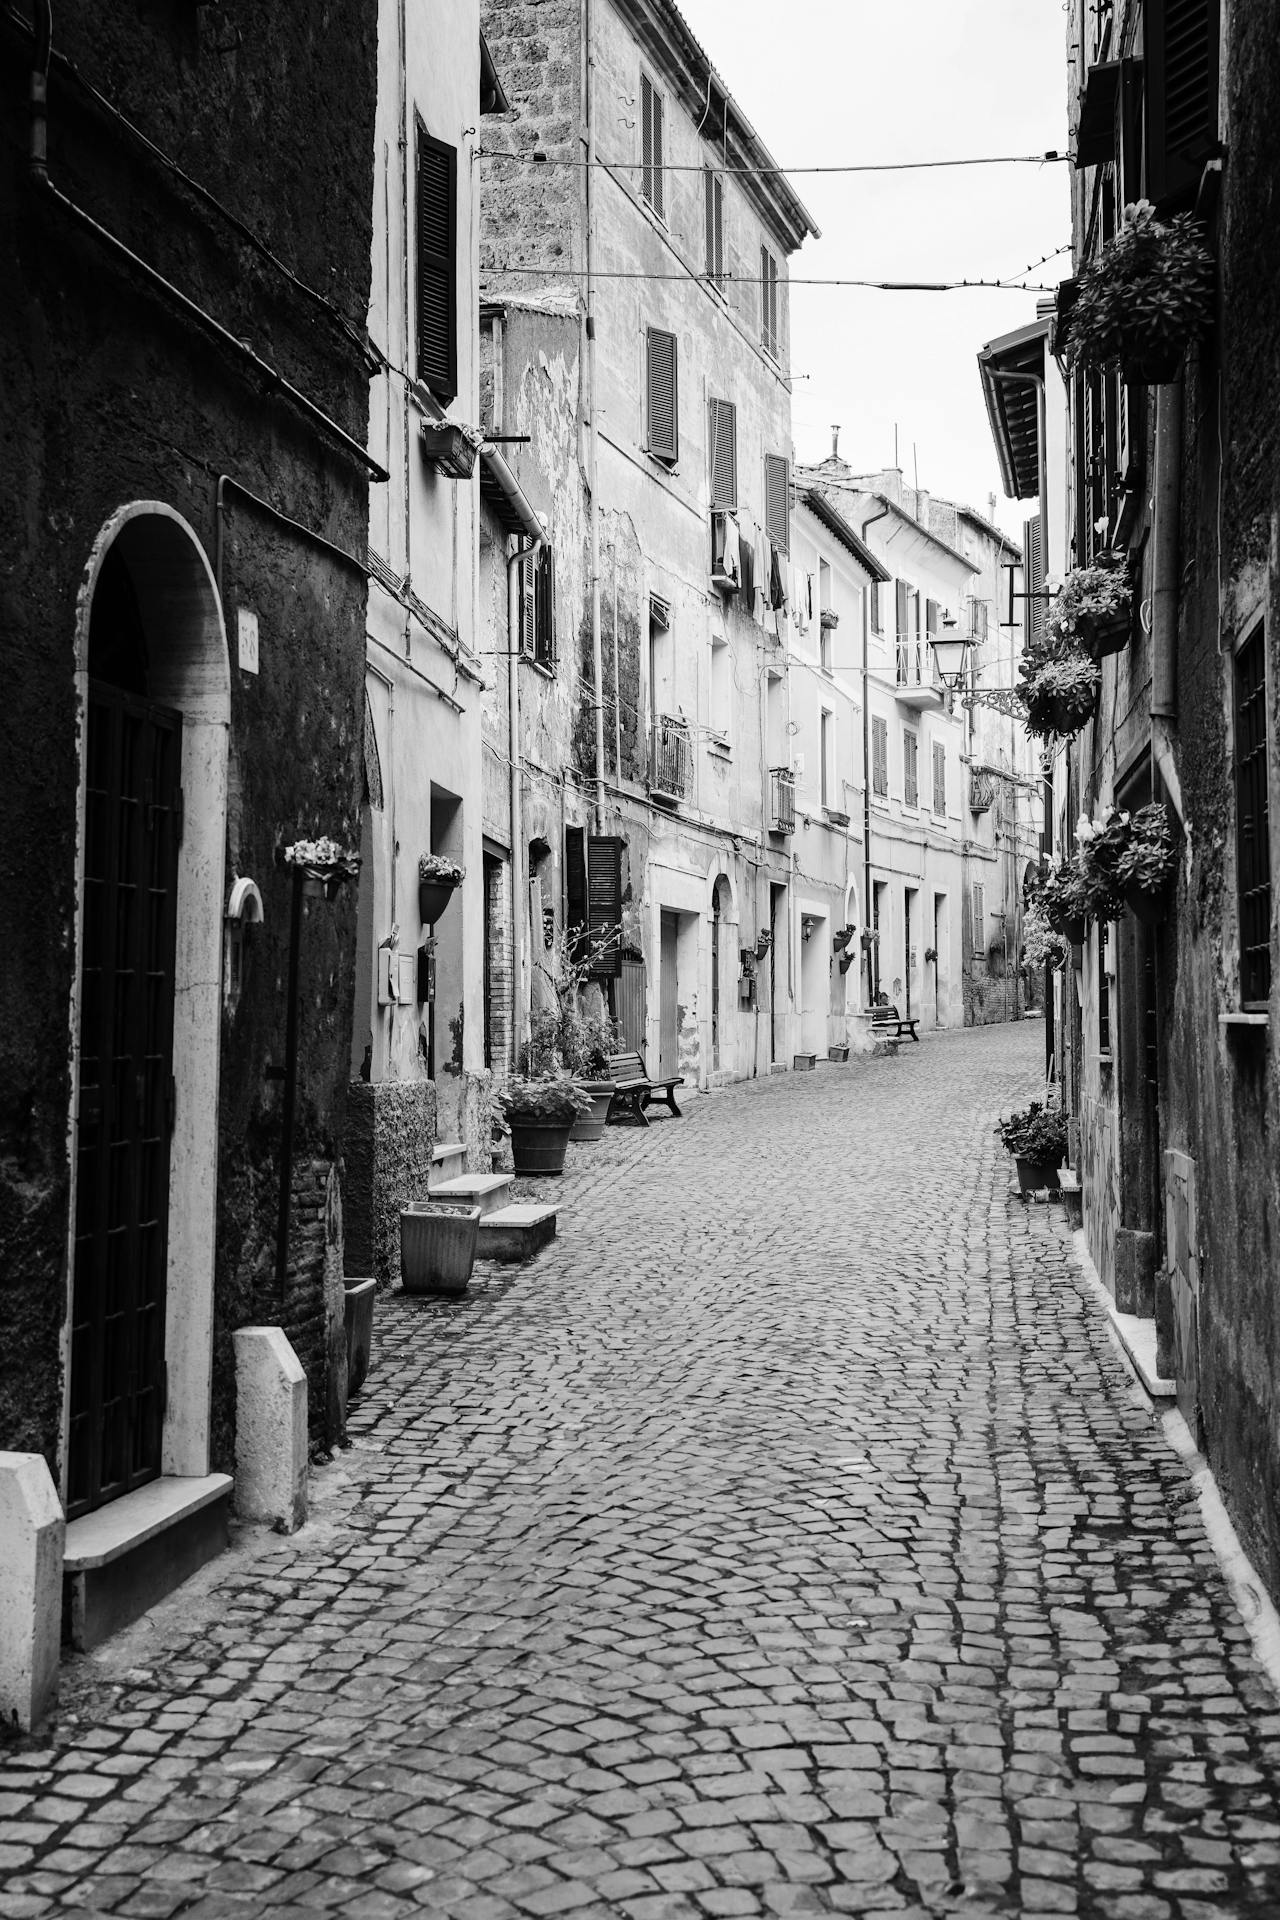 Street in Pero, Italy